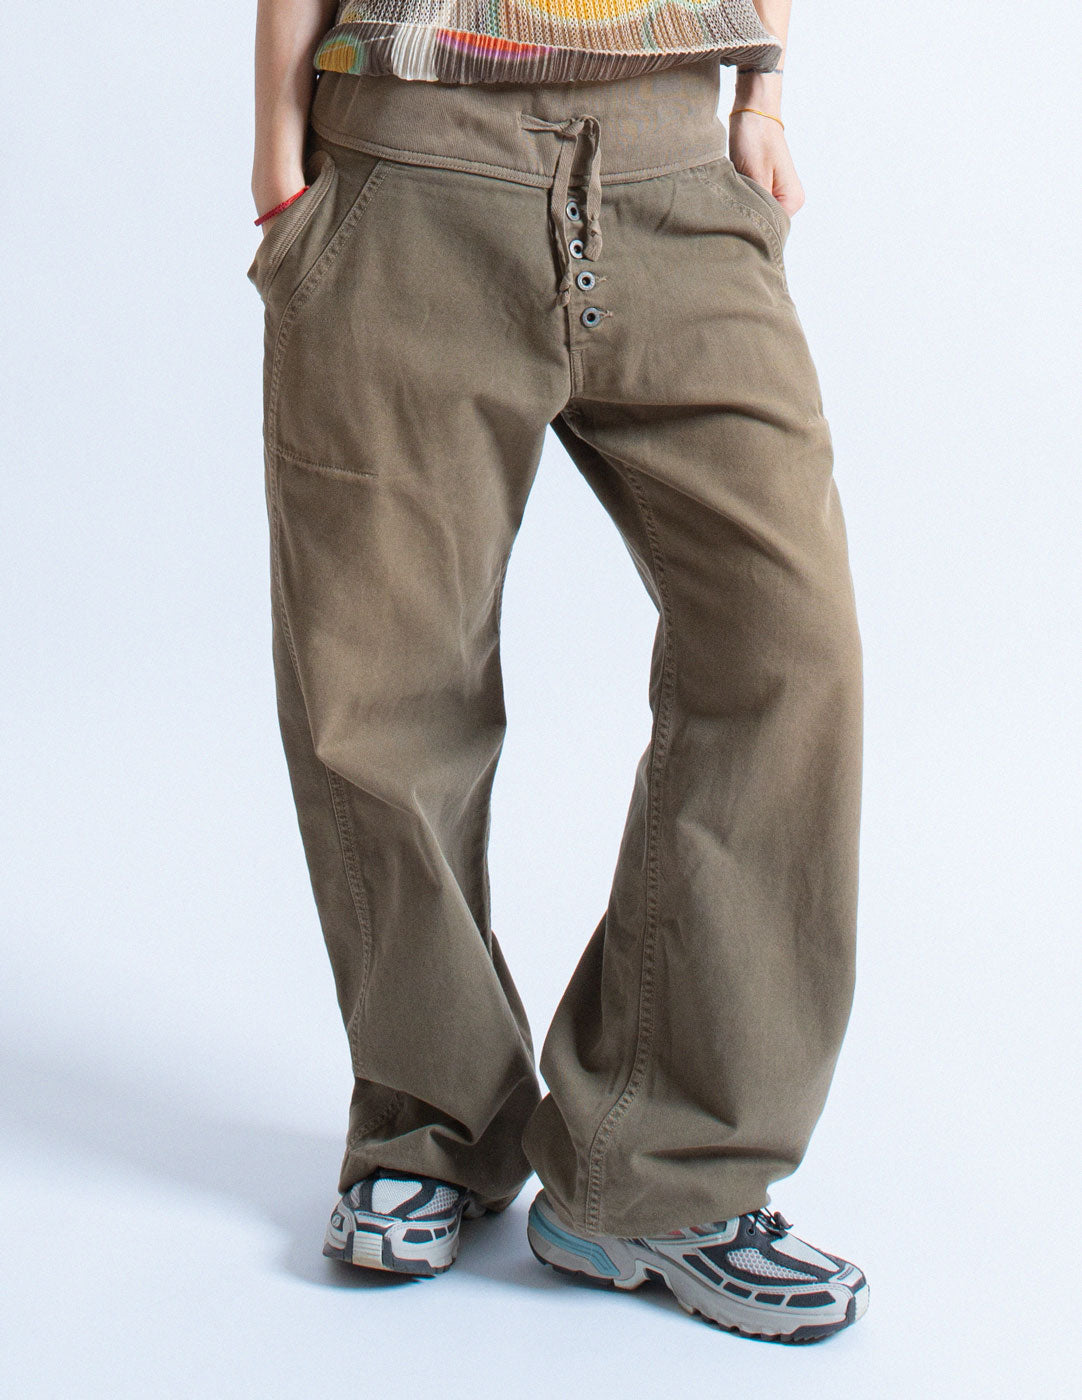 Kapital wide-legged cotton pants front detail